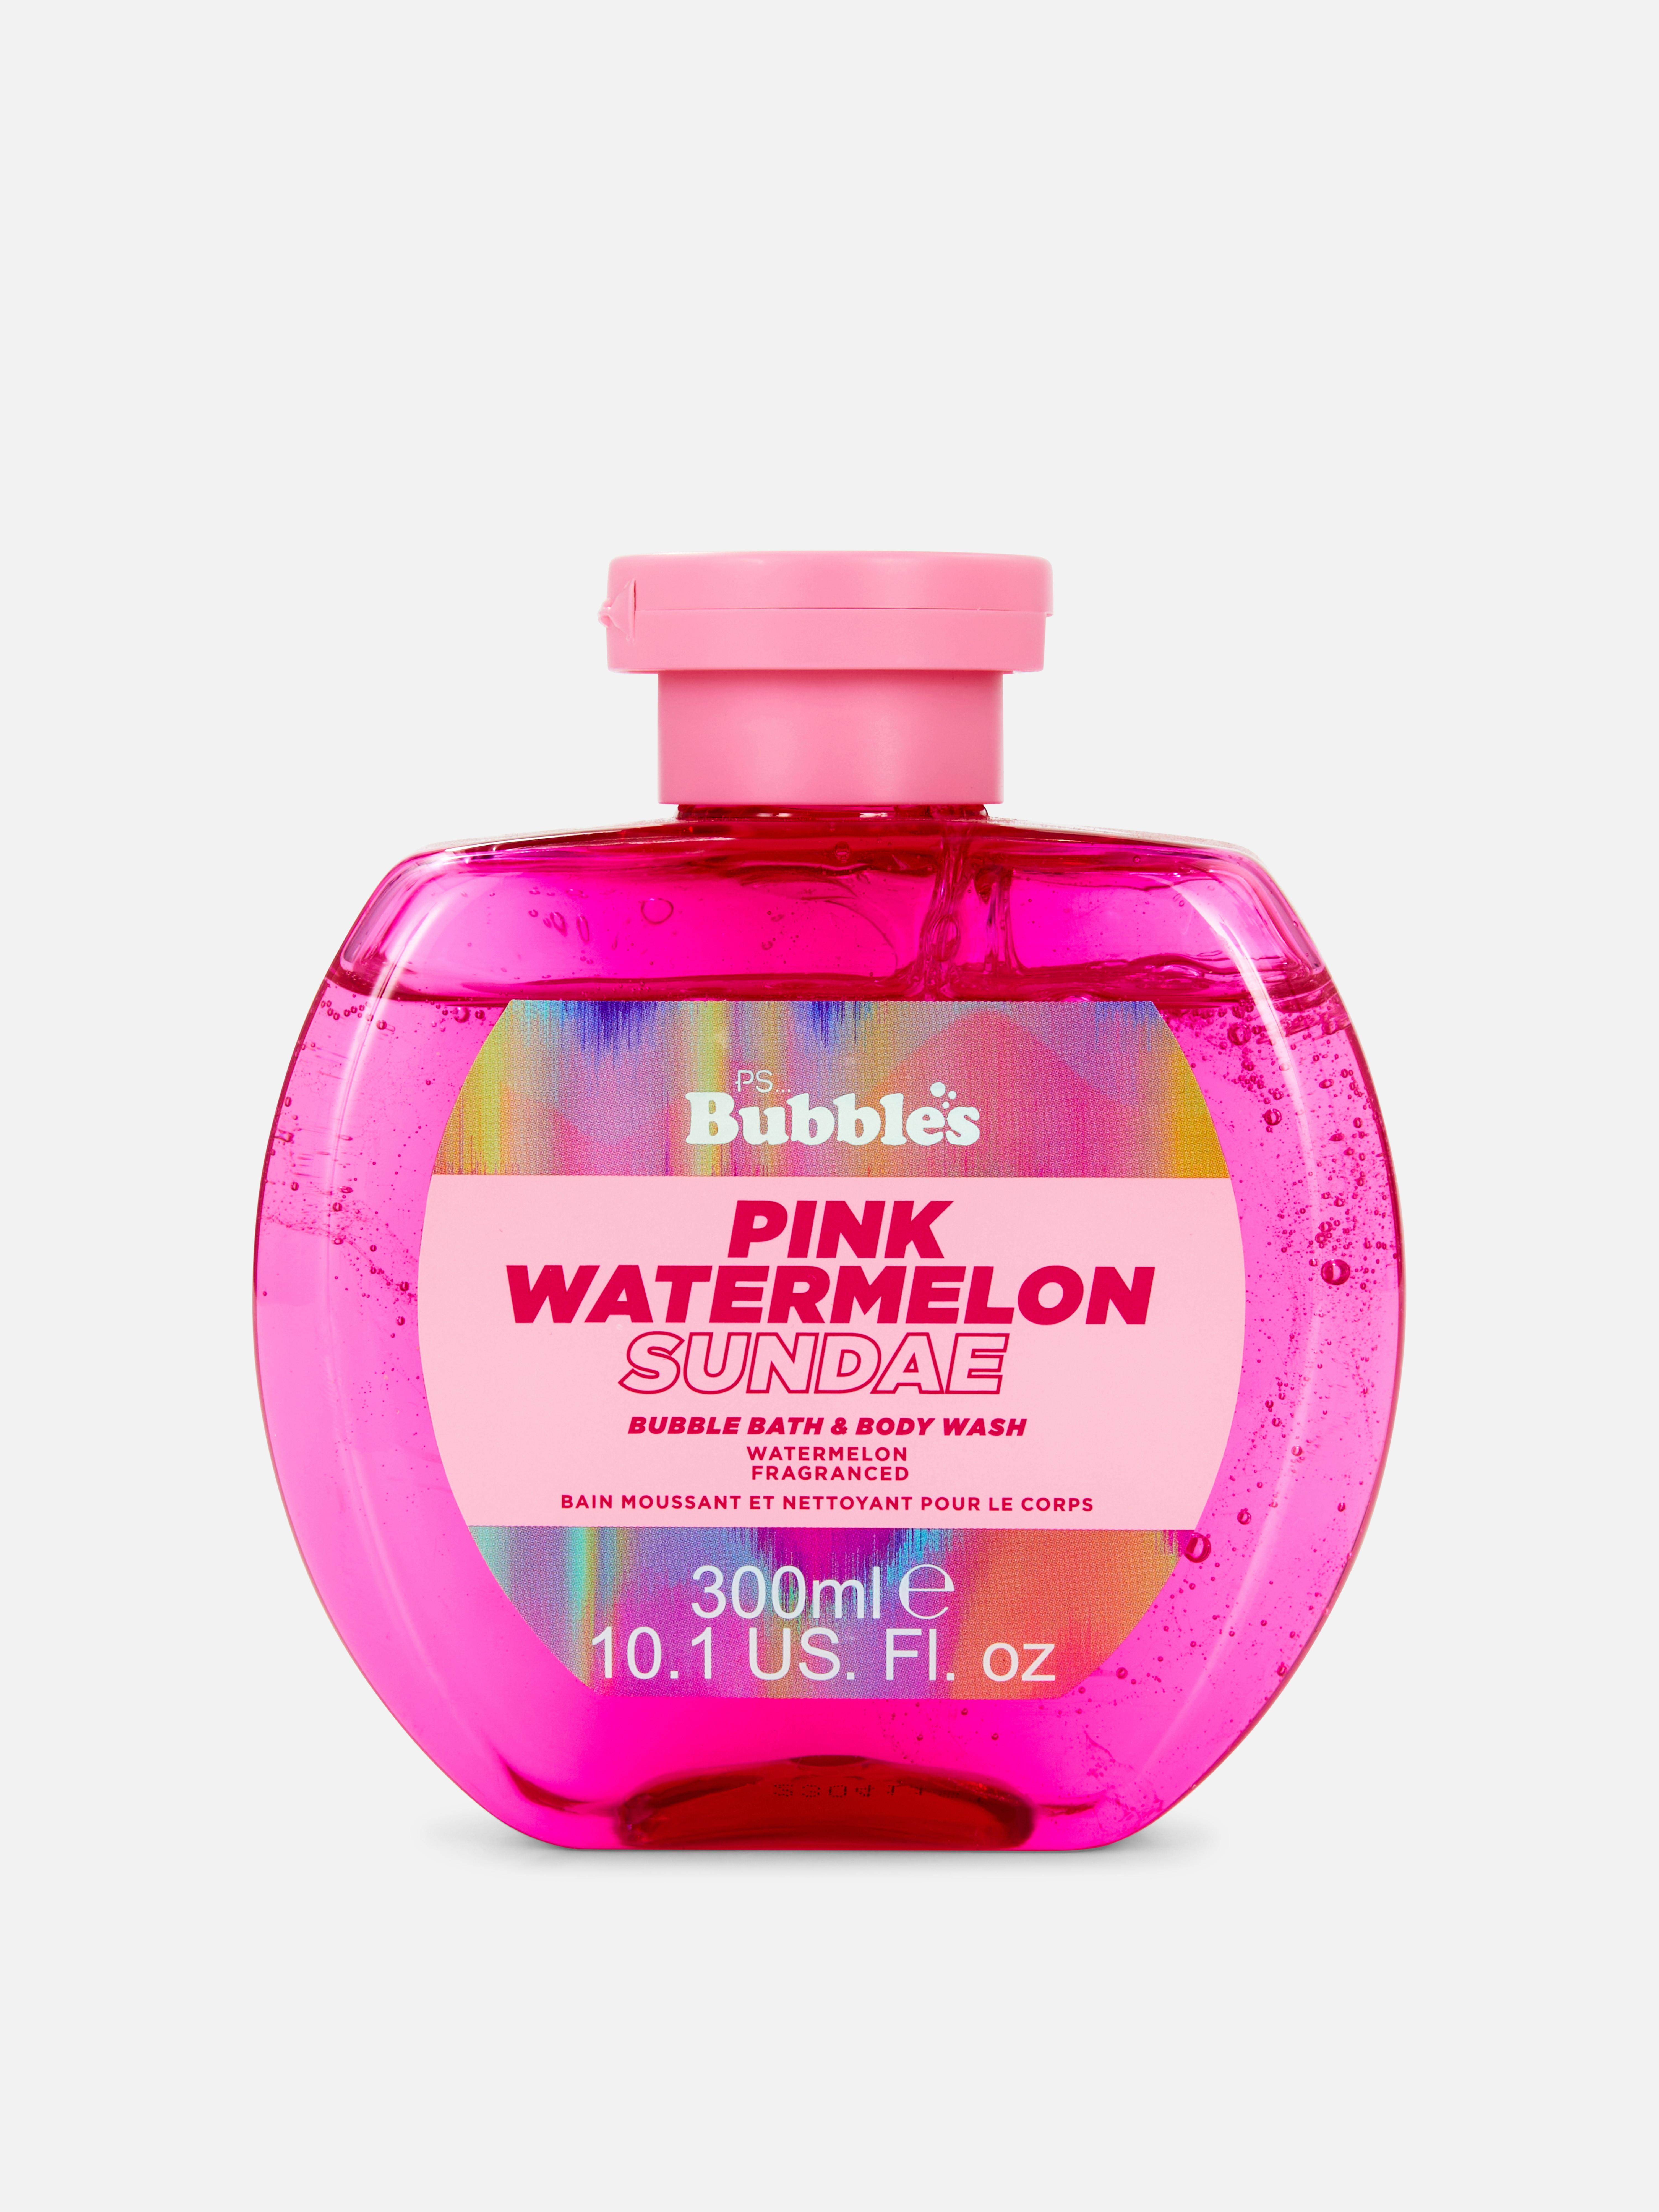 PS… „Bubbles“ Wassermelonen-Duschbad und Schaumbad